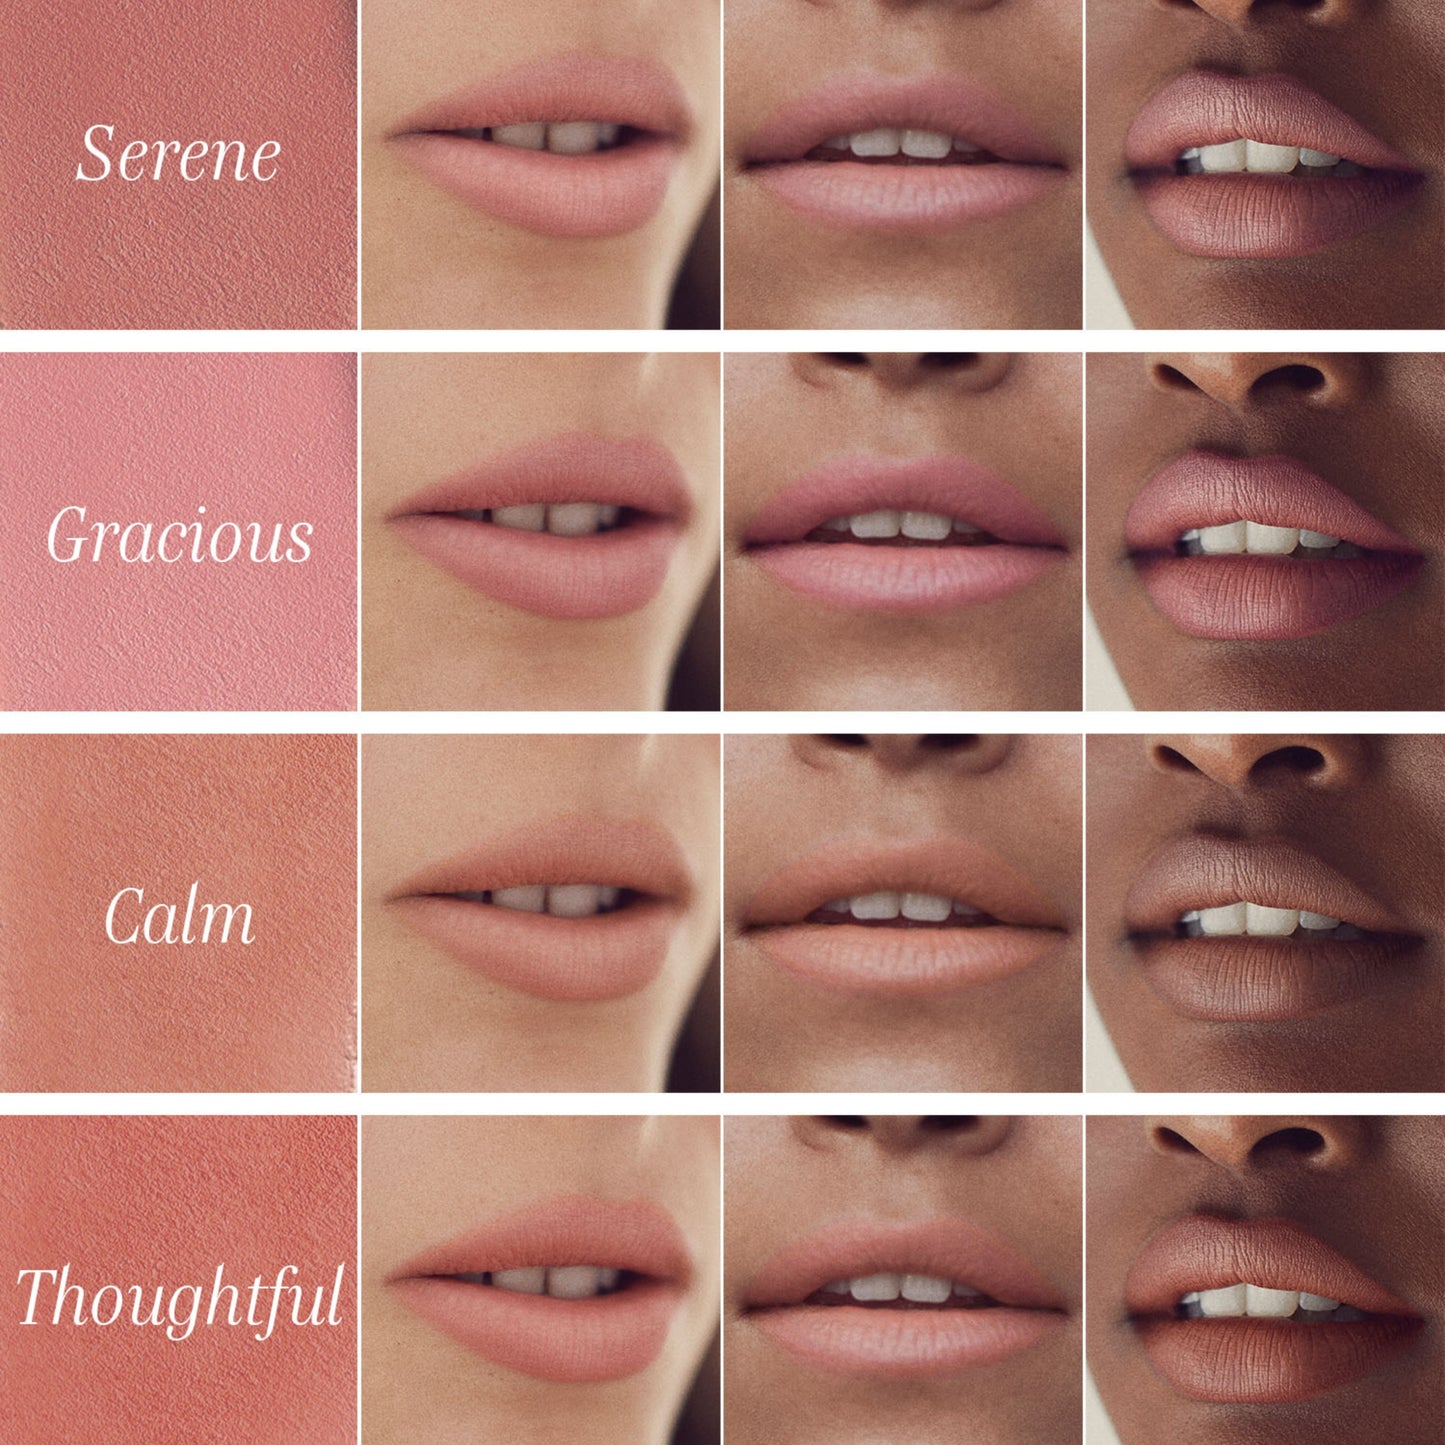 Lipstick--Thoughtful